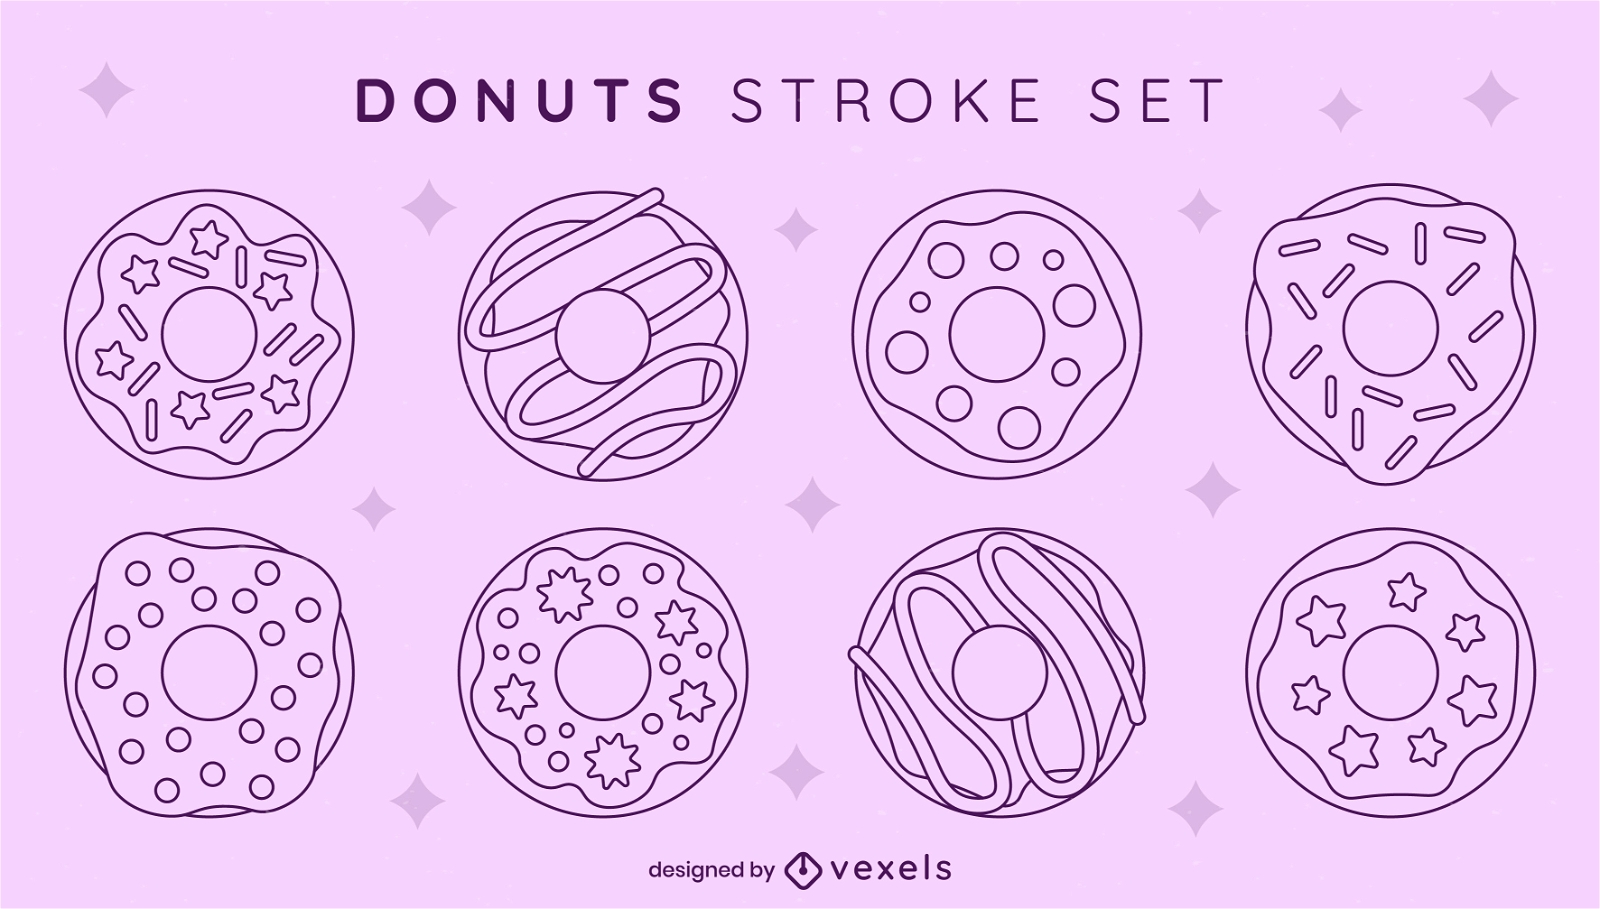 Donuts stroke set design